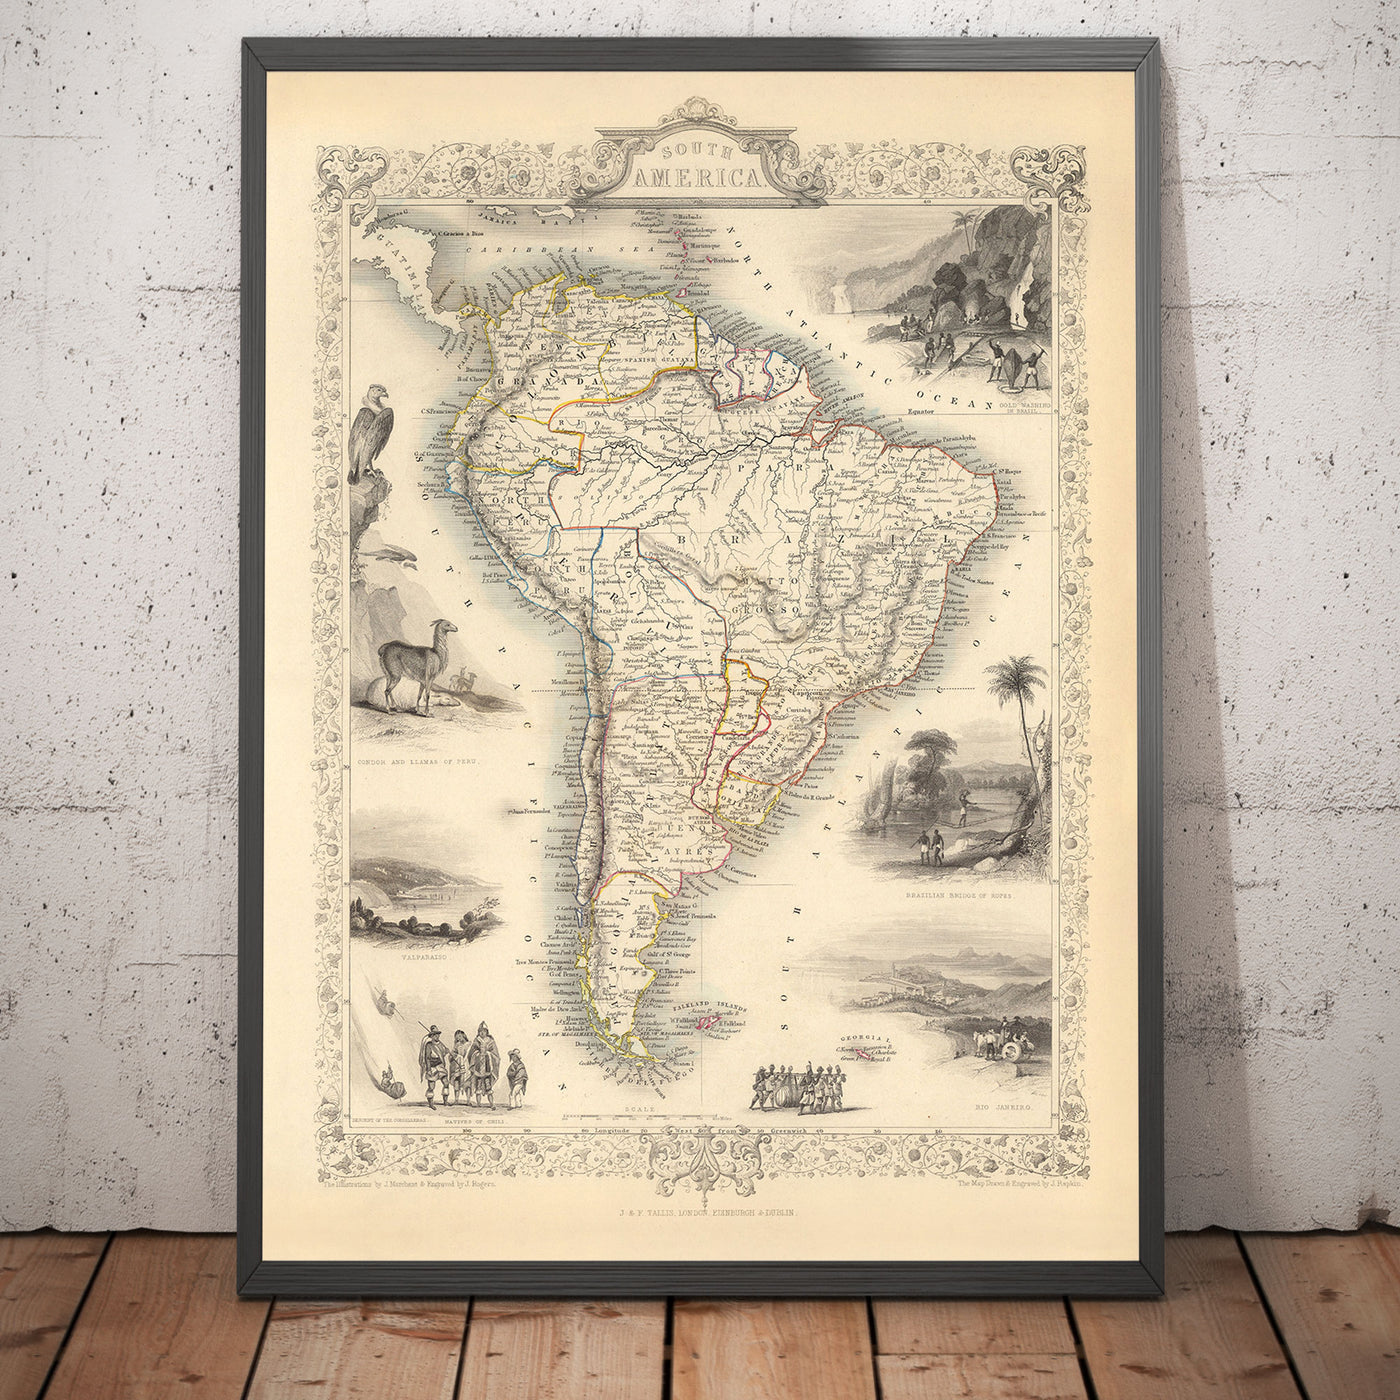 Alte Karte von Südamerika, 1851 von Tallis & Rapkin - Portugiesischer Kolonialismus, Goldwäsche, Amazonas, Brasilien, Kolumbien